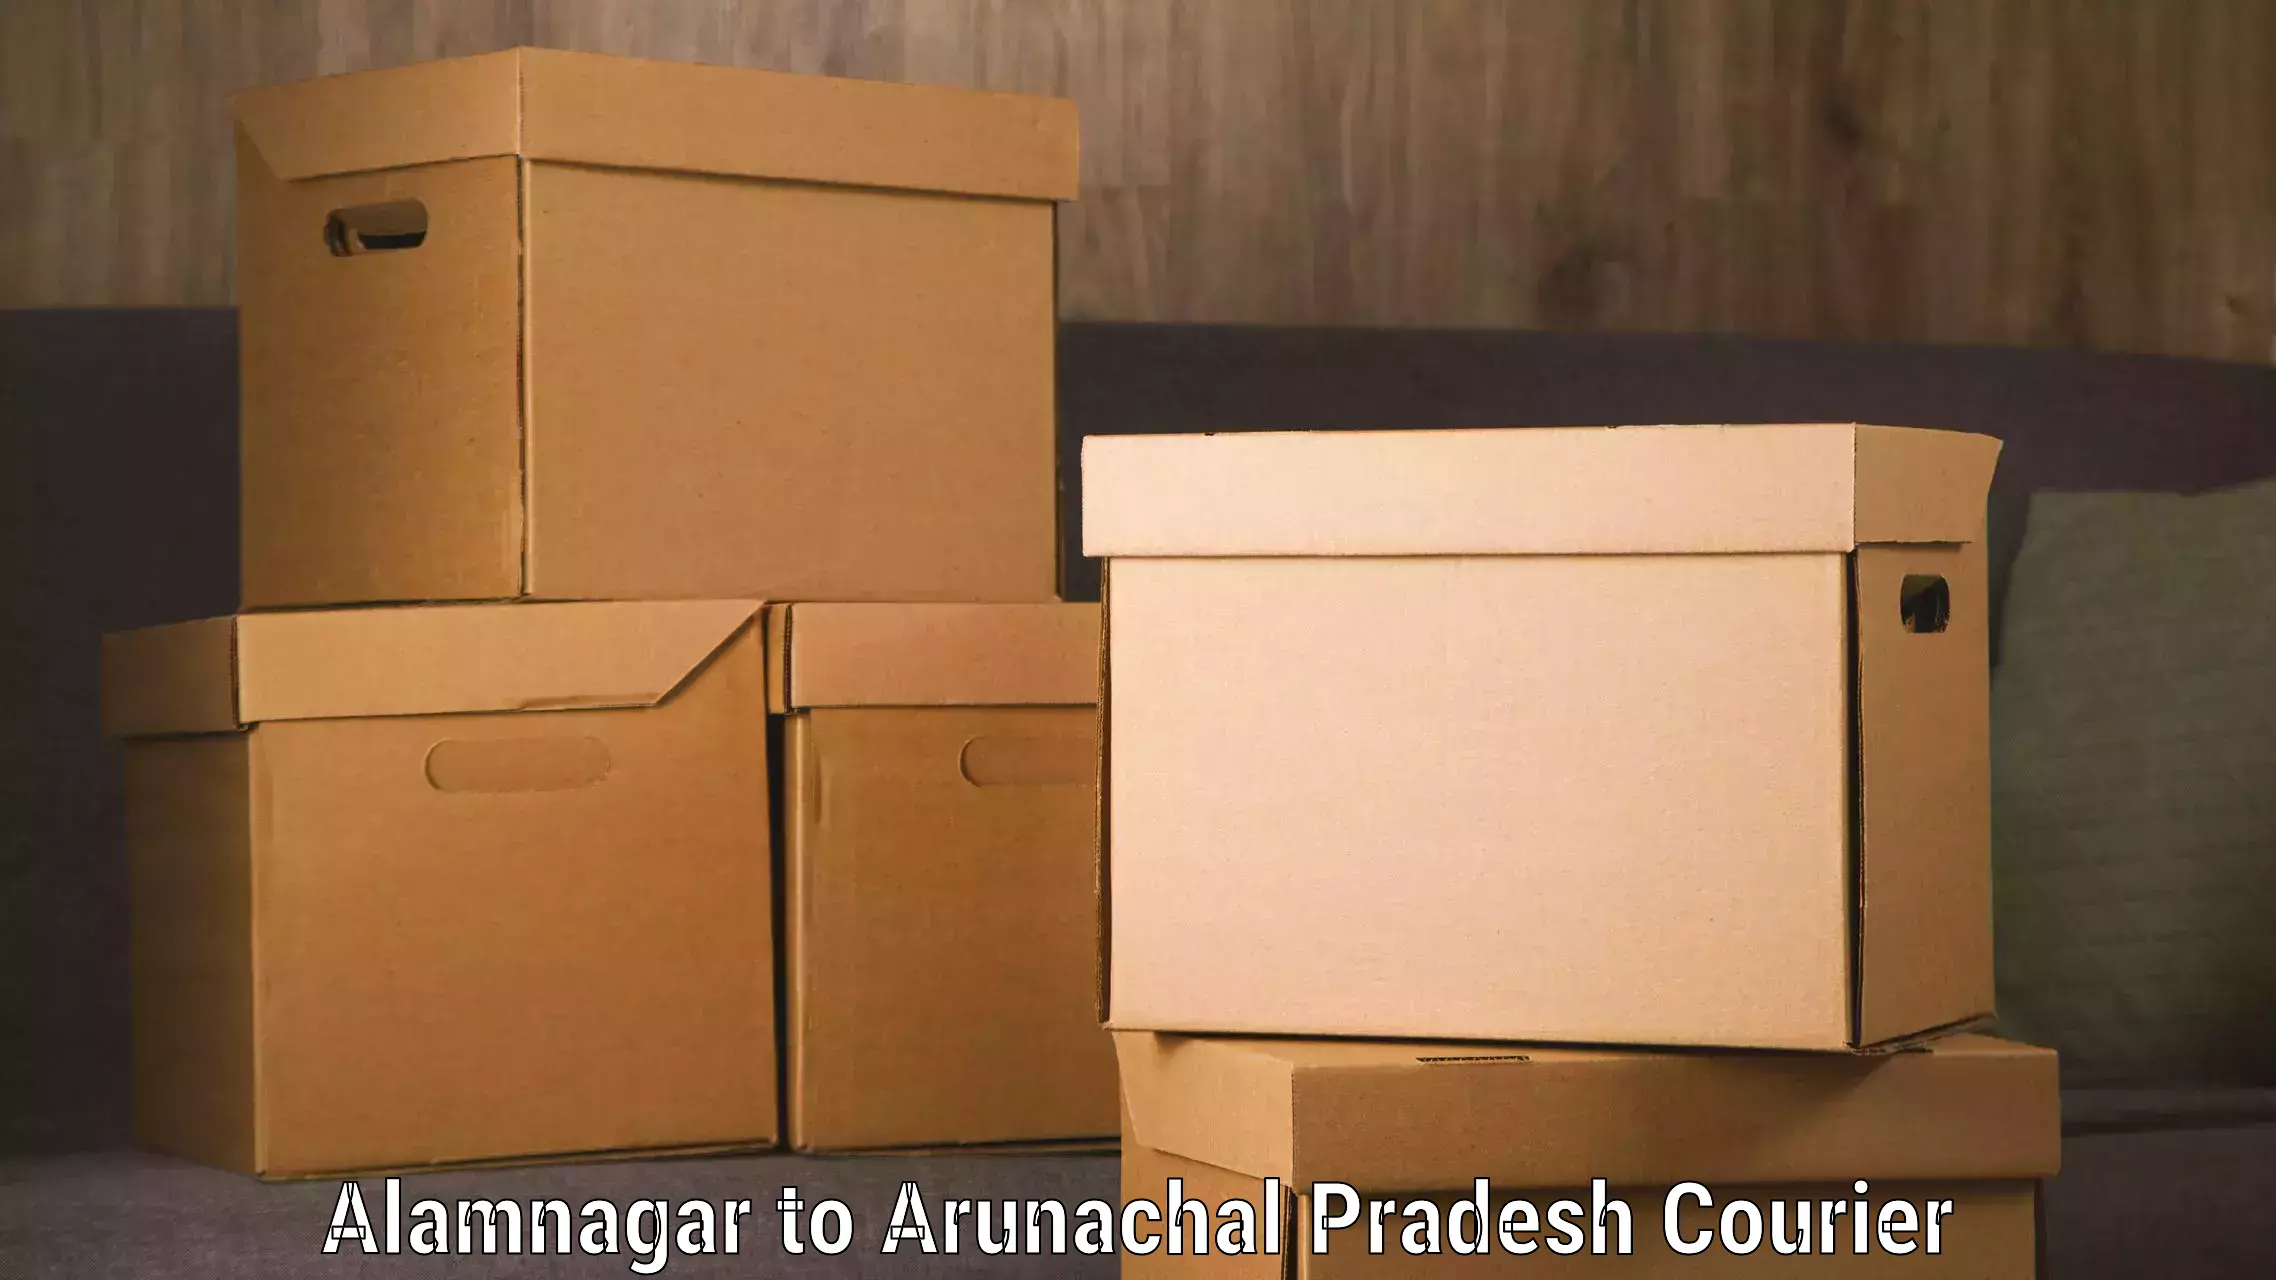 Efficient baggage courier system Alamnagar to Arunachal Pradesh